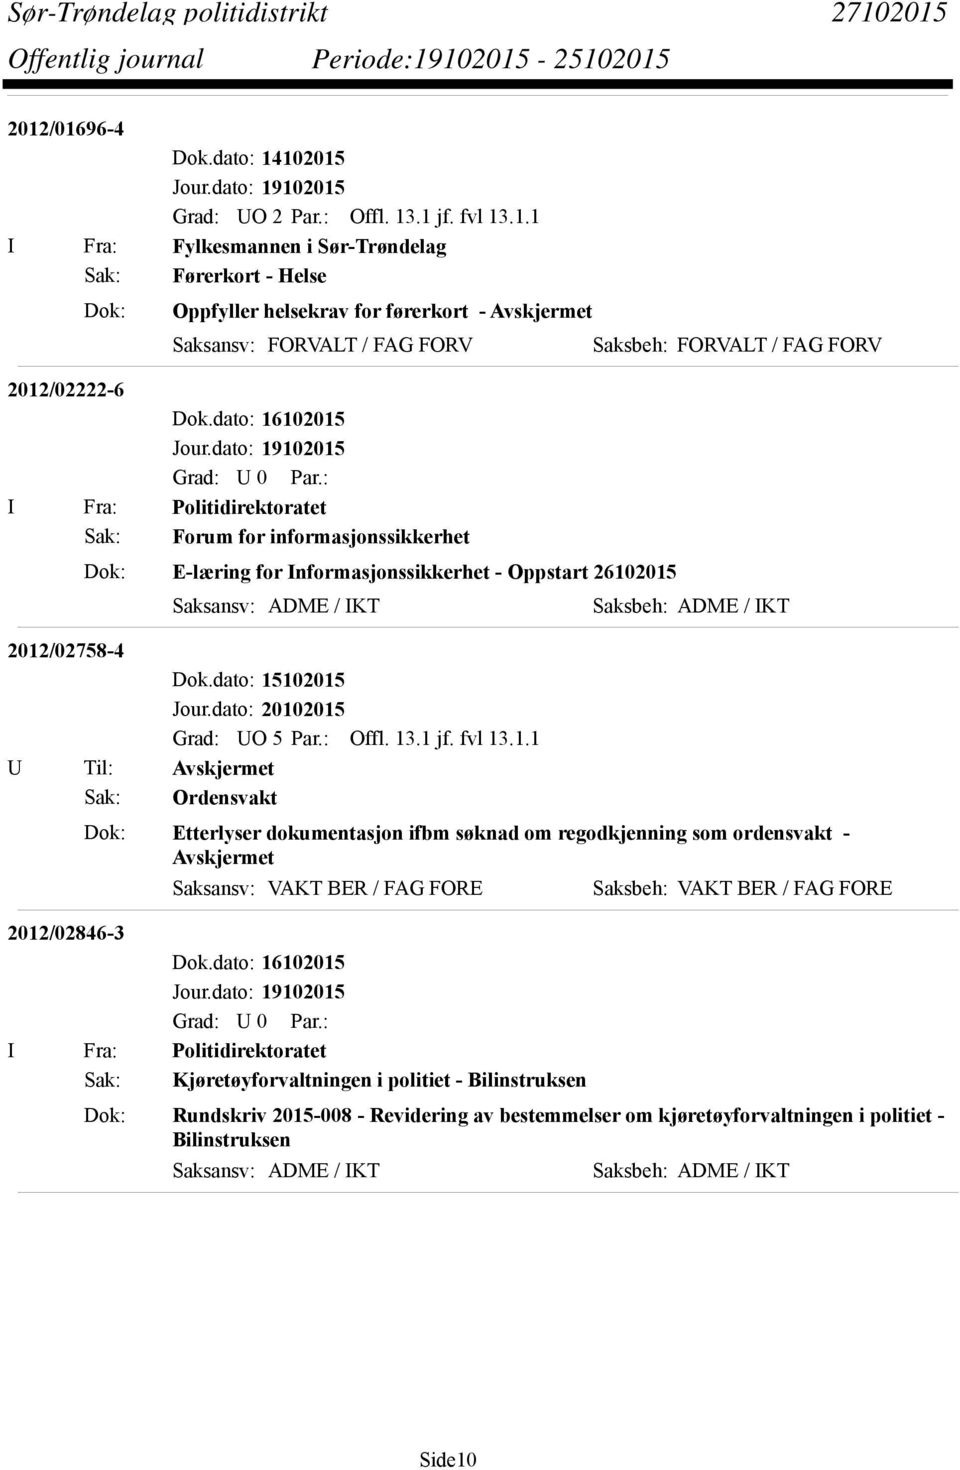 2012/02758-4 Dok.dato: 15102015 Sak: Ordensvakt Dok: Etterlyser dokumentasjon ifbm søknad om regodkjenning som ordensvakt - Avskjermet 2012/02846-3 Dok.